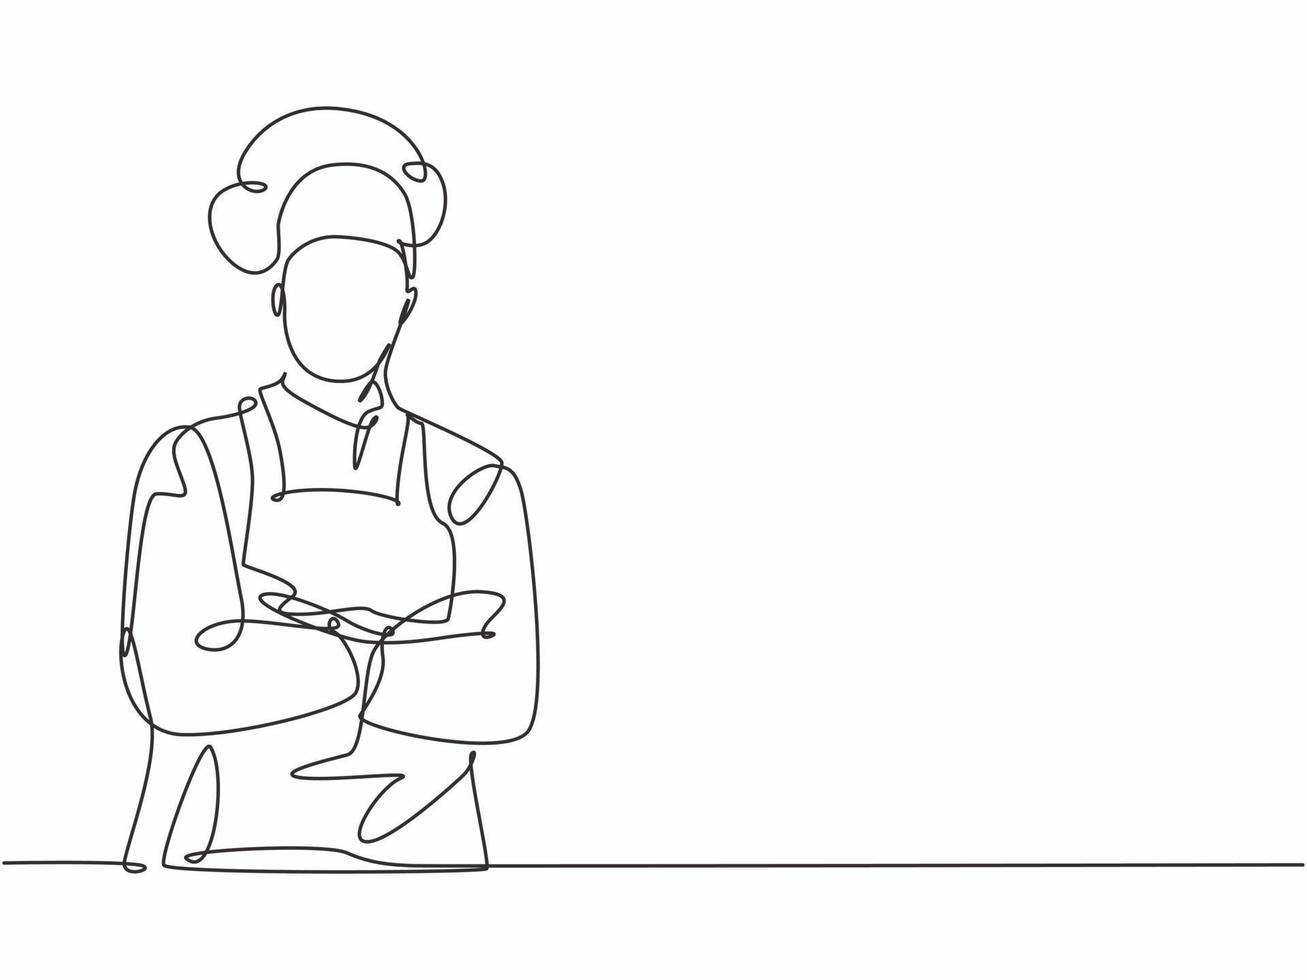 enkele doorlopende lijntekening van jonge zelfverzekerde knappe mannelijke chef-kok in uniform pose staande en kruisende arm in borst. resto banner model concept een lijntekening ontwerp vector grafische illustratie